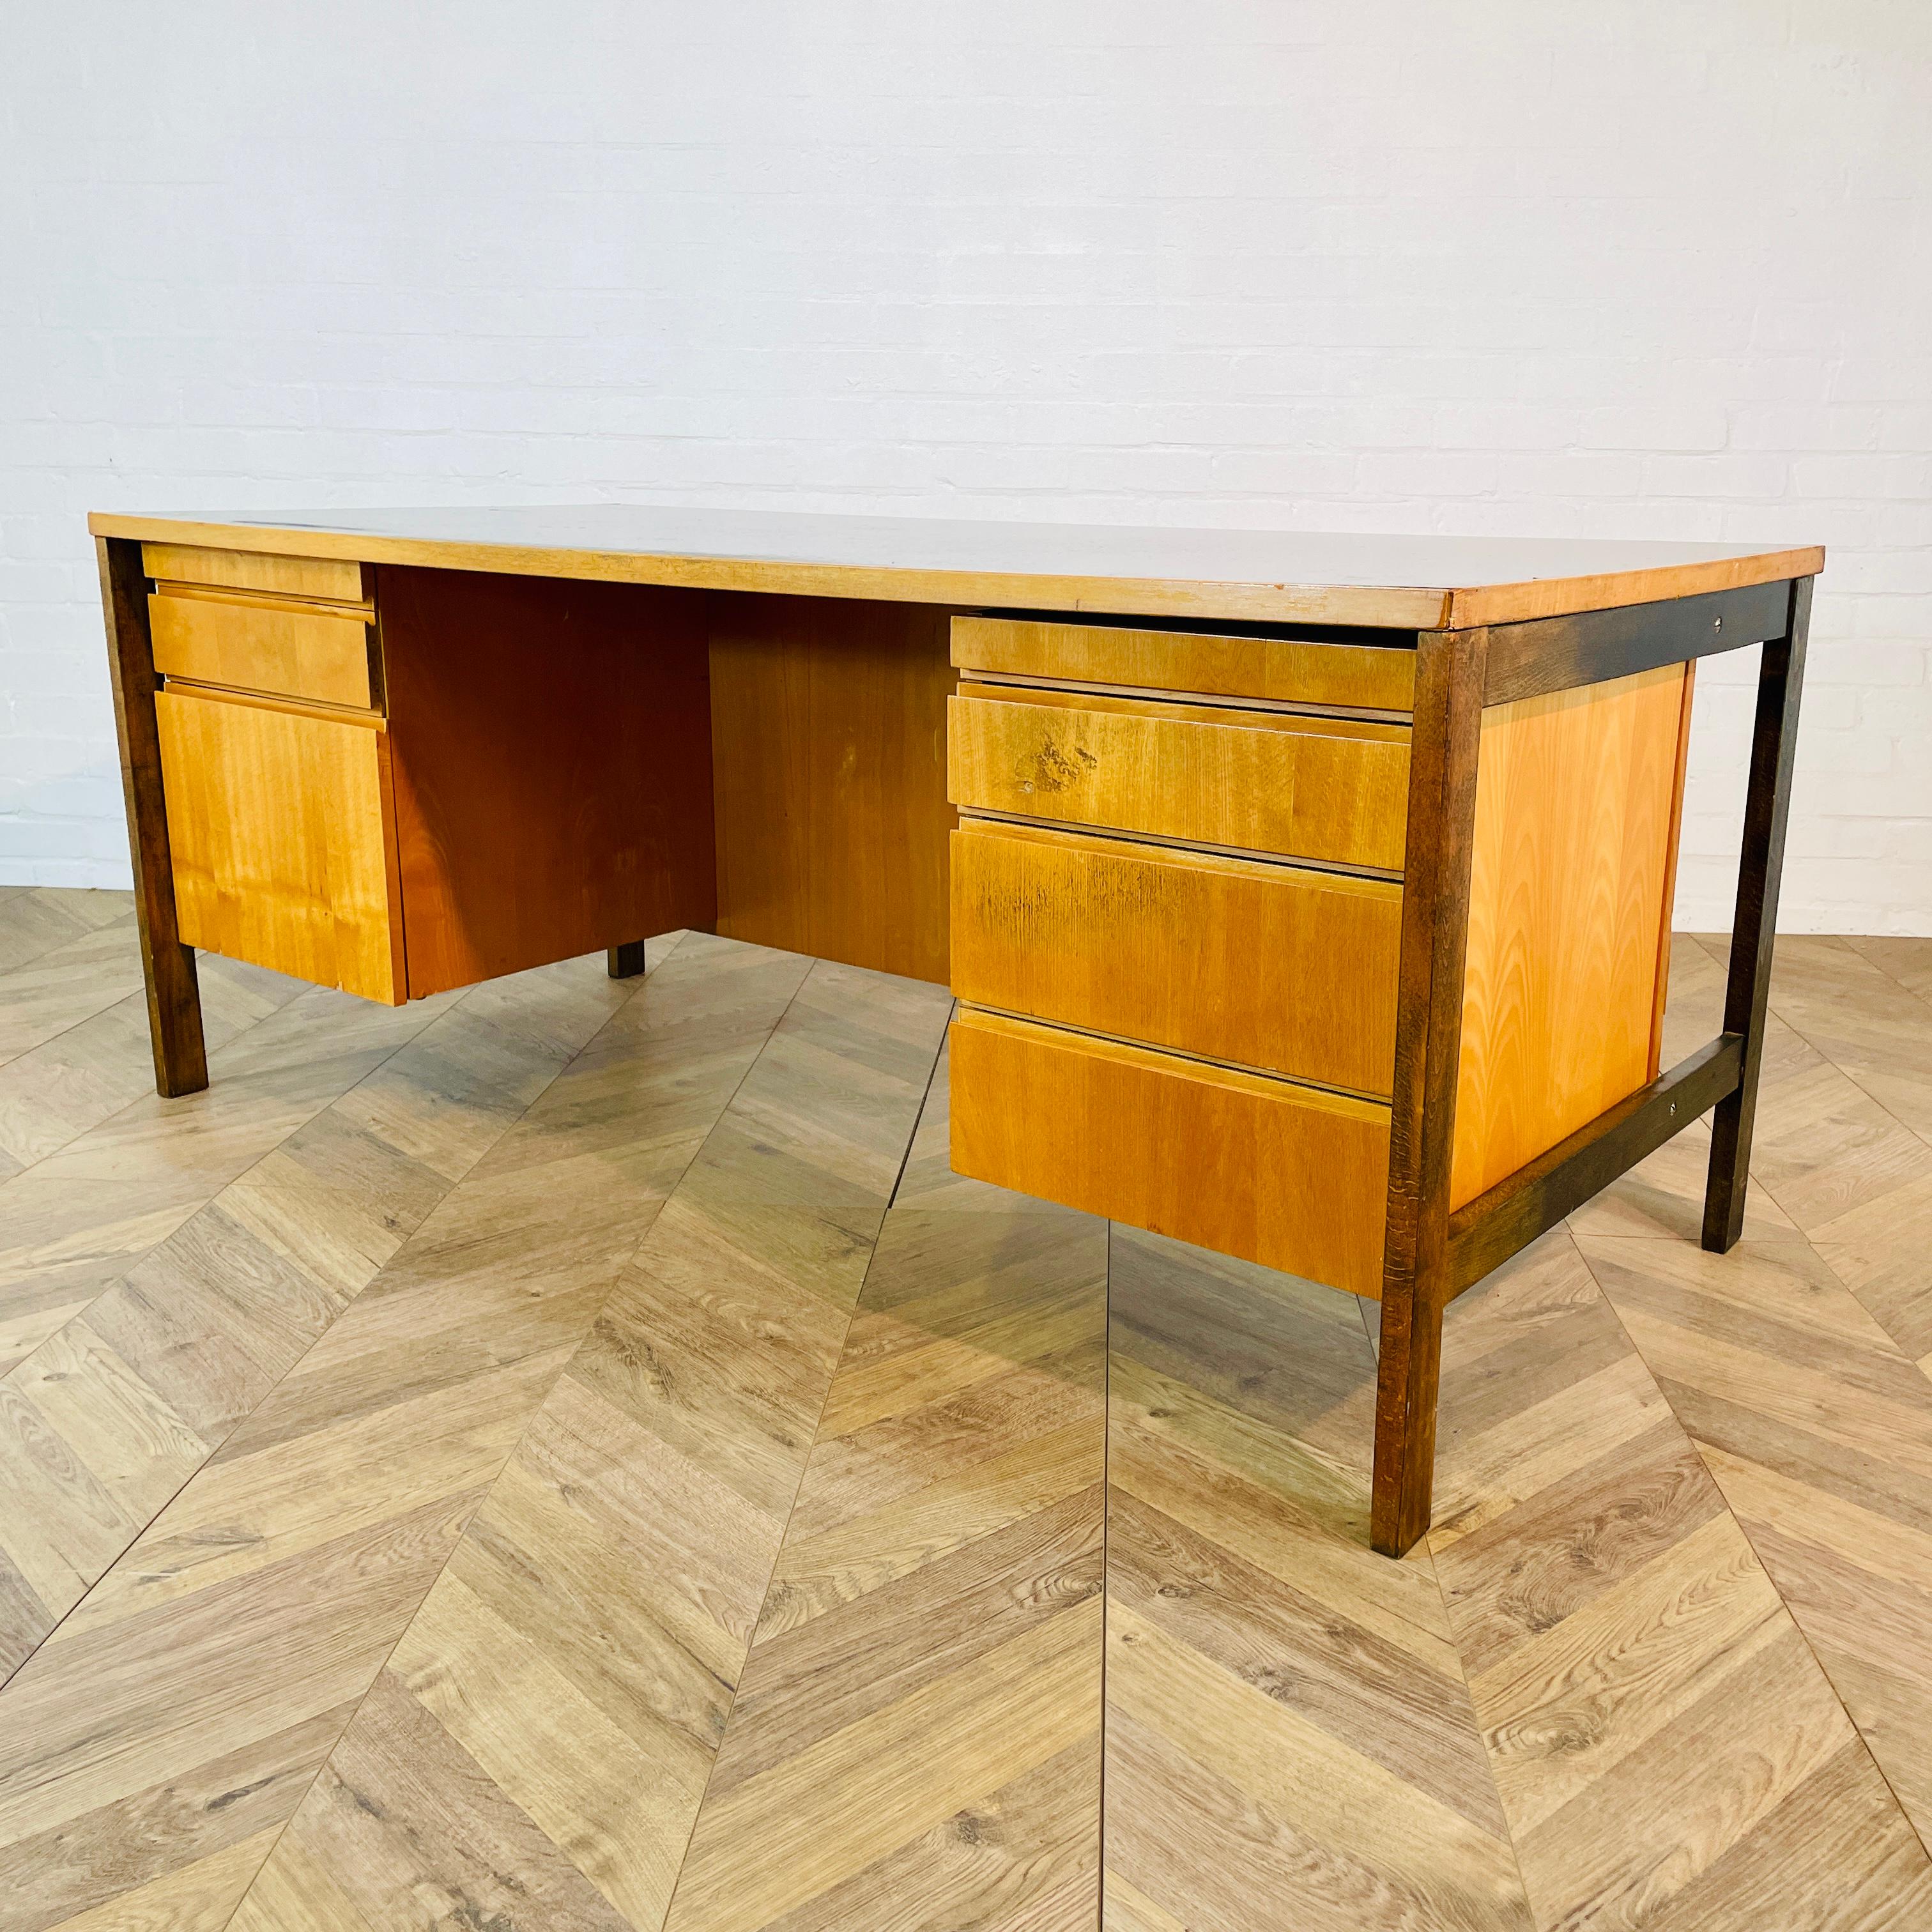 Ein schöner großer Chefschreibtisch von Jens Risom. Um 1960er.

Der Schreibtisch ist in gutem Vintage-Zustand mit kleinen altersbedingten Spuren und Schrammen. (siehe Fotos), mit einer sichtbaren Markierung auf der Oberseite, aber das hat keinen